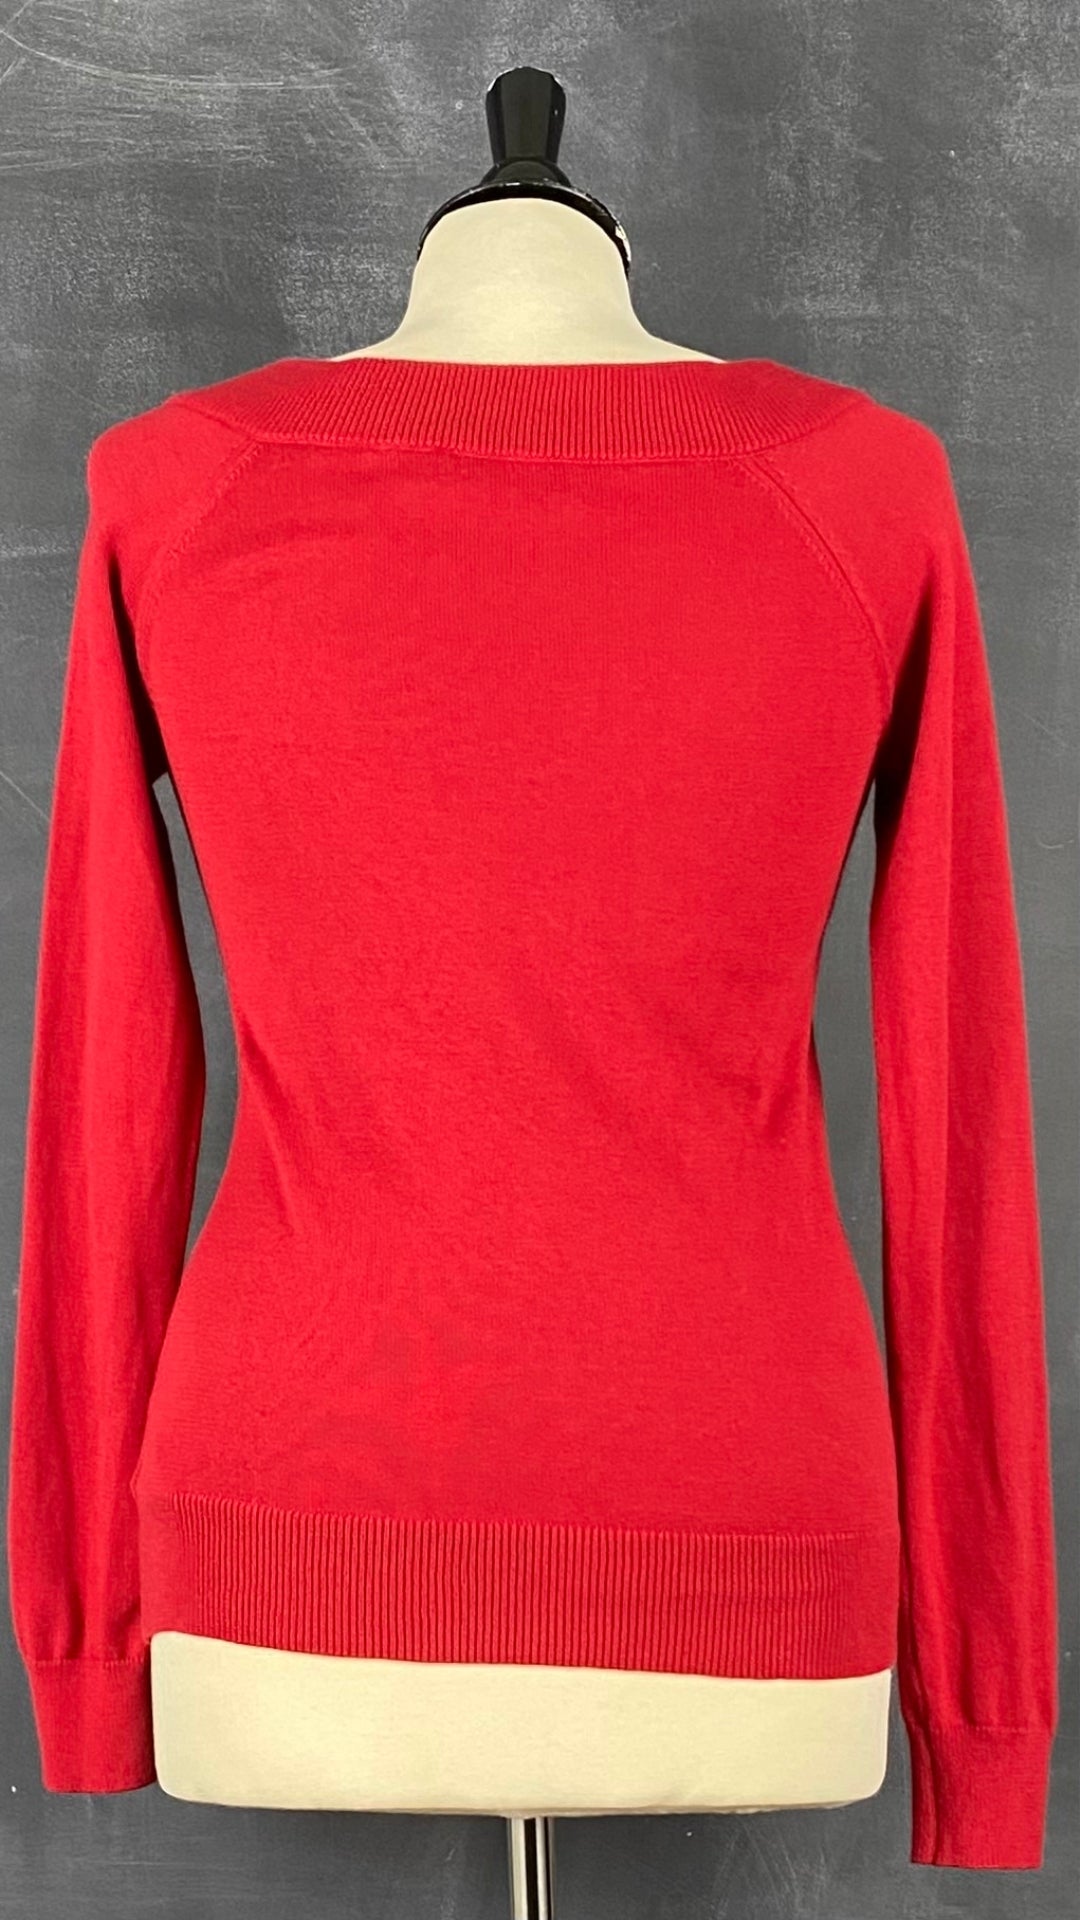 Chandail en tricot rouge col bateau Lauren Ralph Lauren, taille small. Vue de dos.